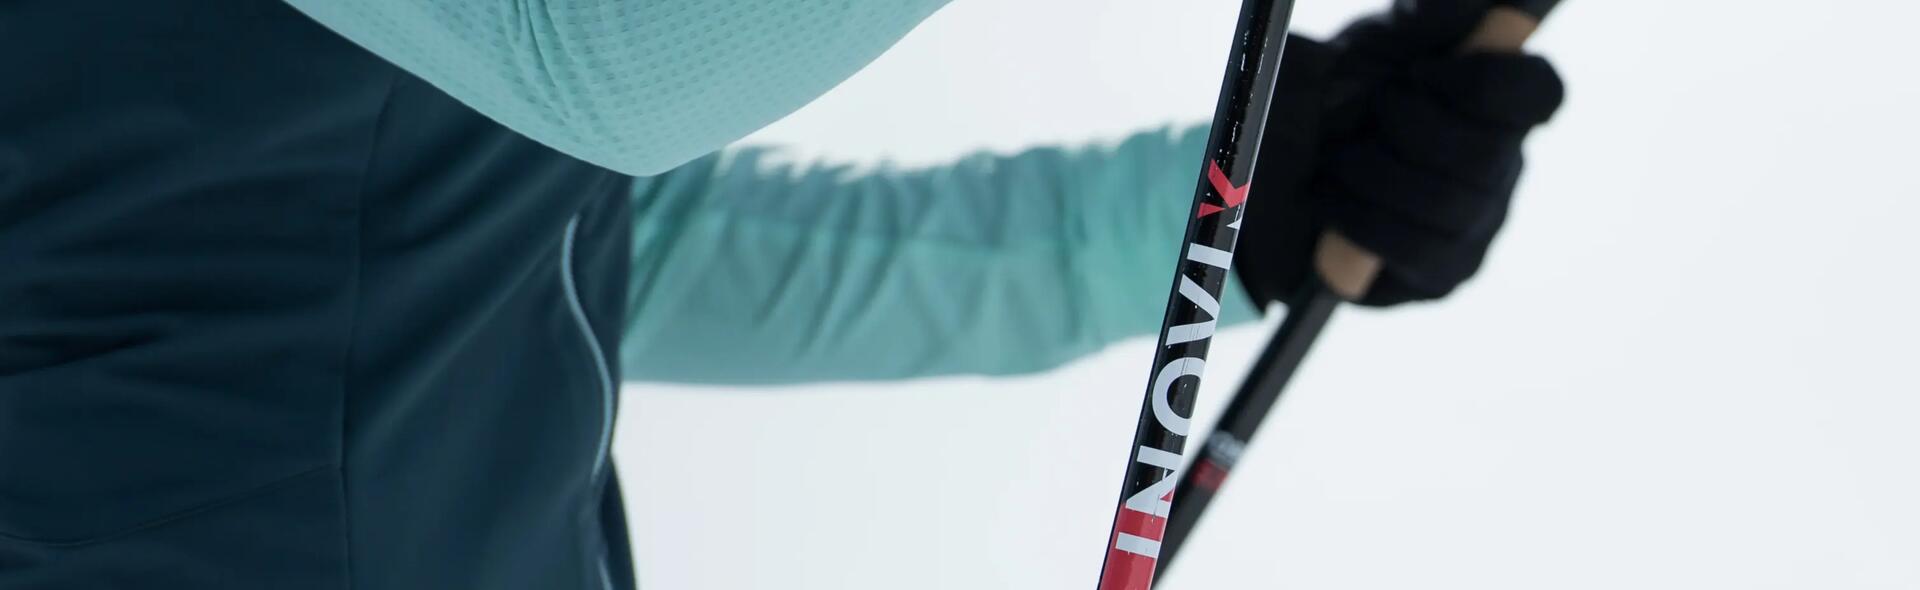 Die richtige Wahl der Stöcke für den Skilanglauf